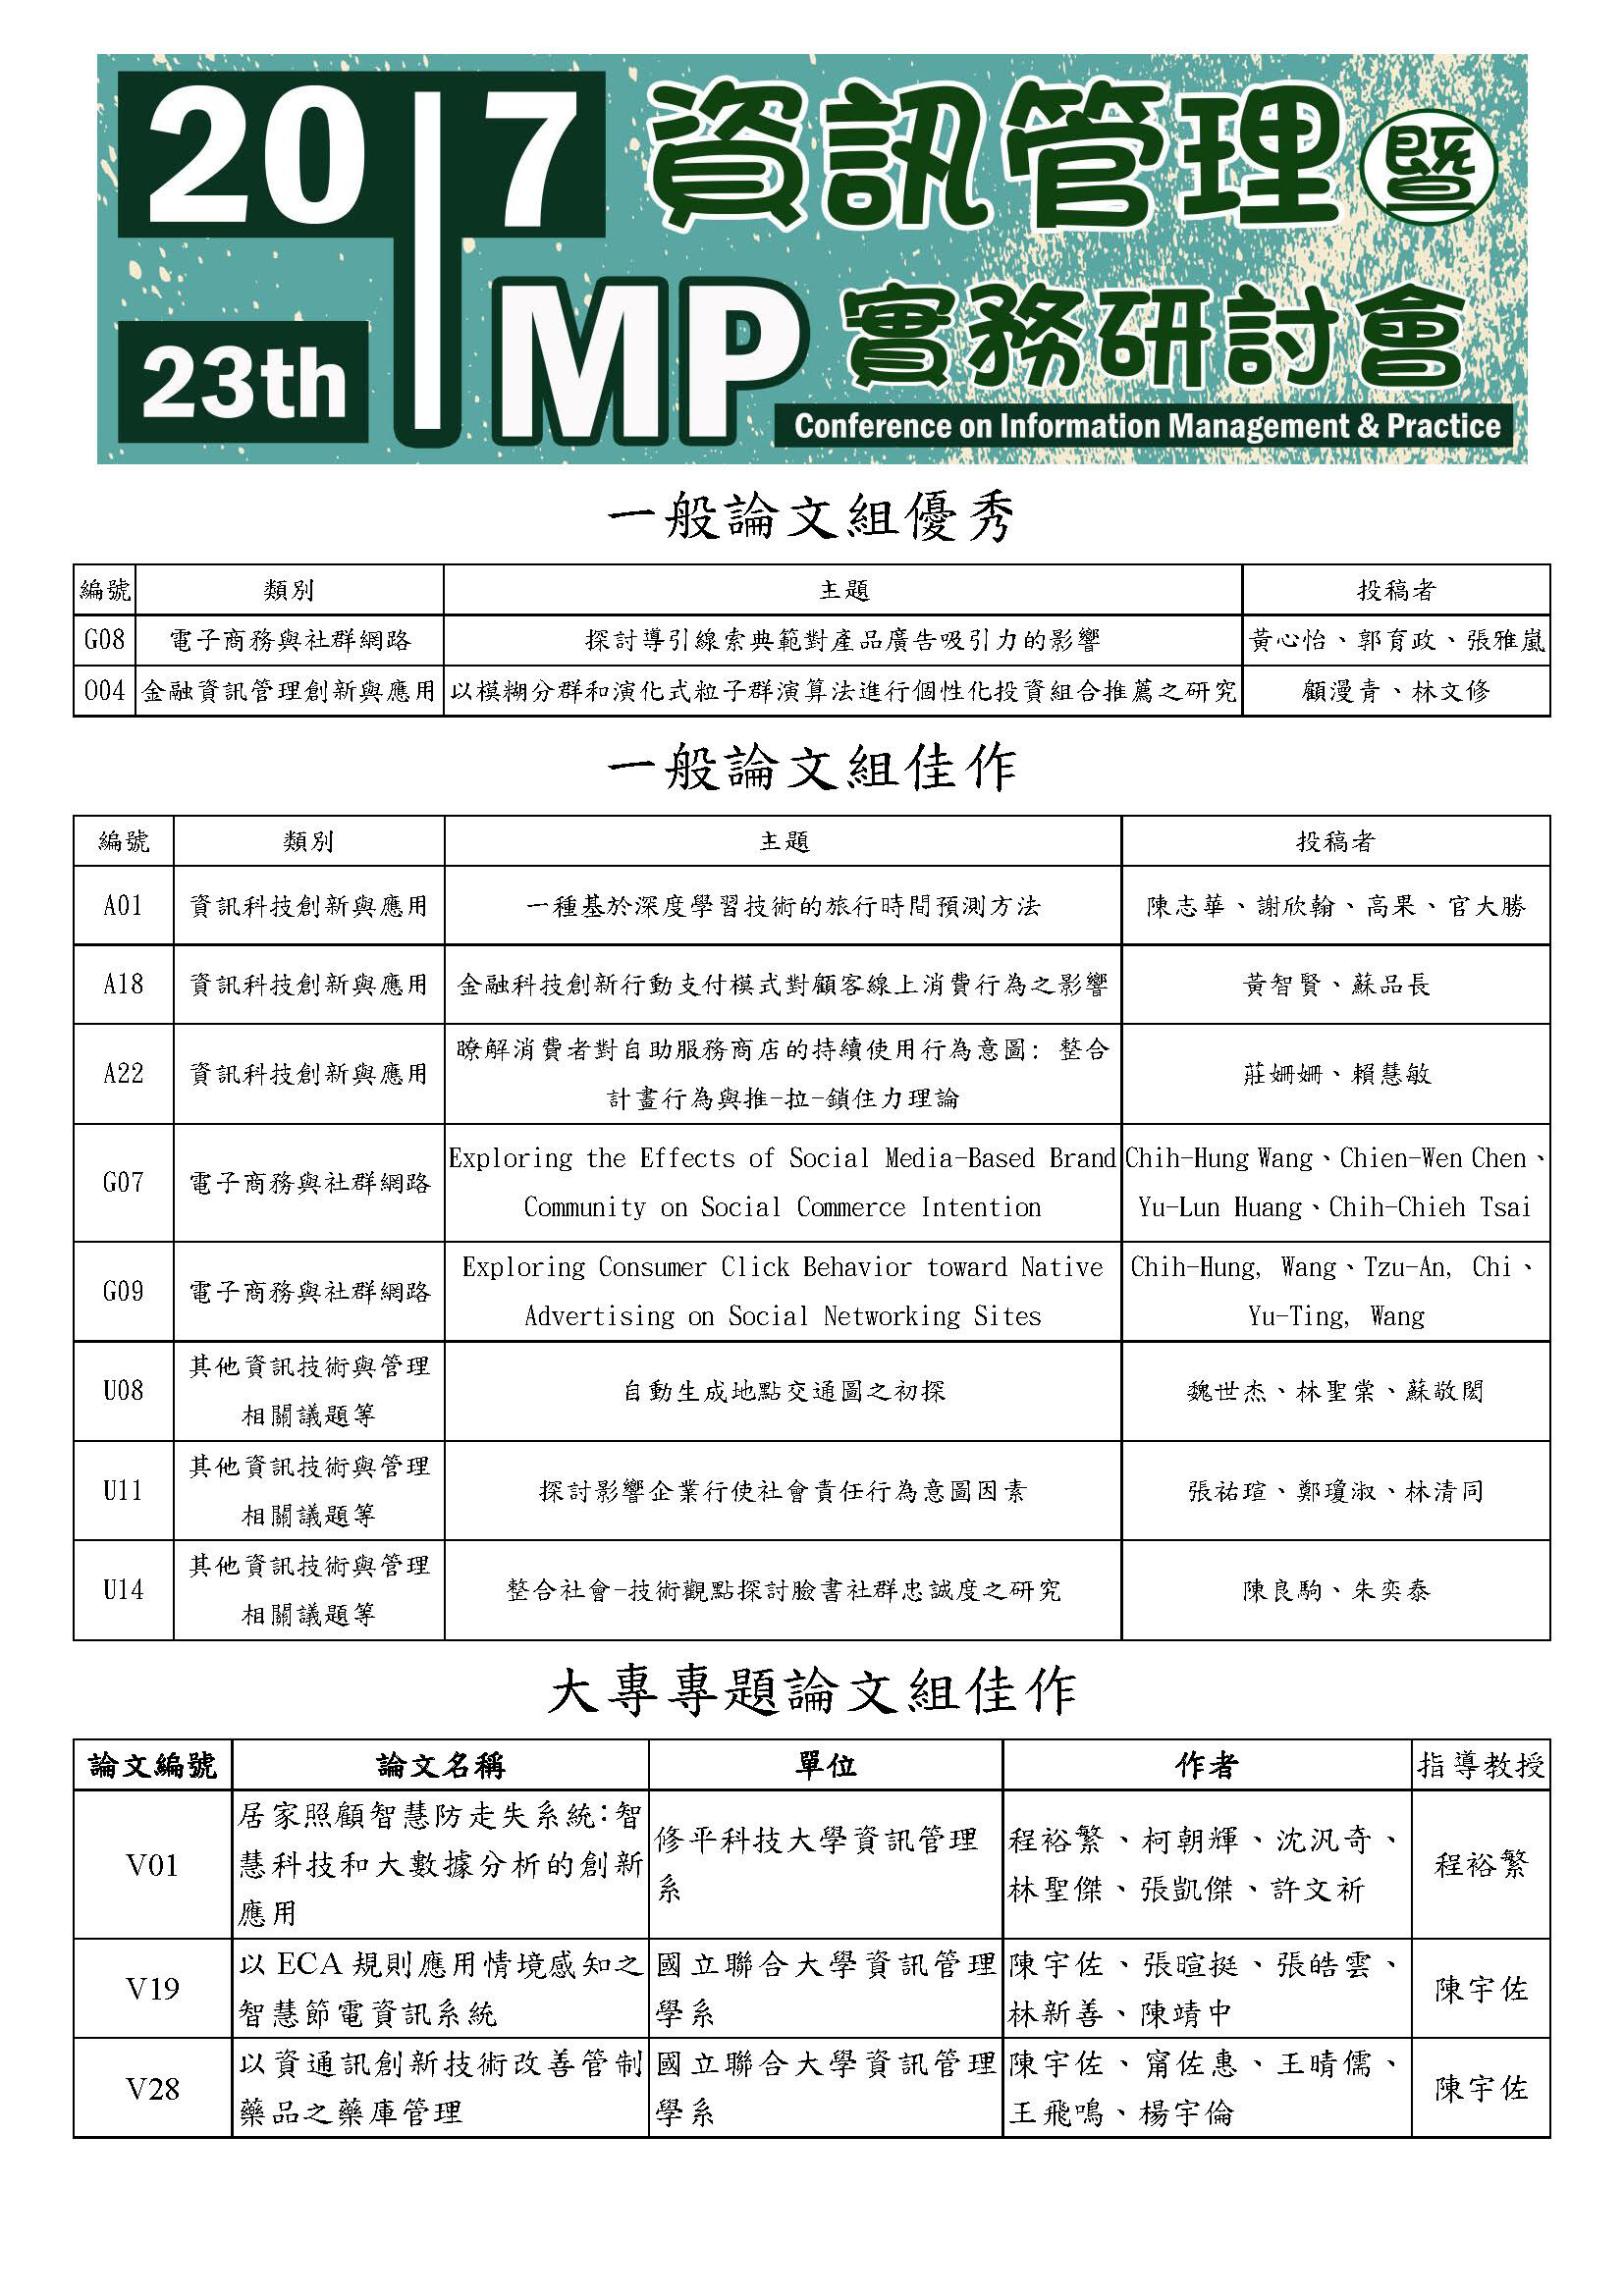 第23屆資訊管理暨實務研討會 (IMP2017)